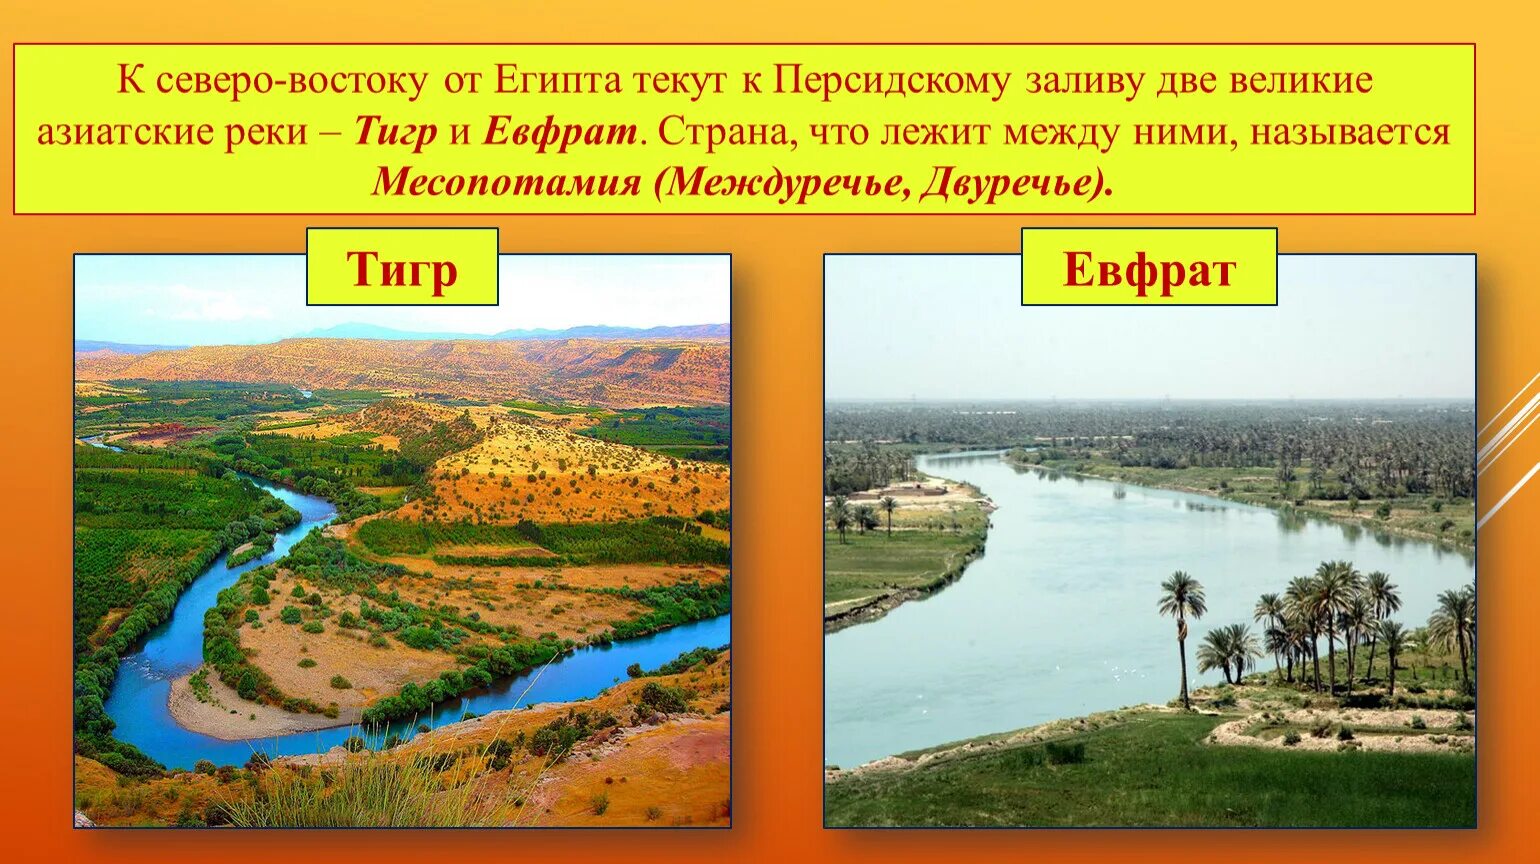 Устье рек тигра и Евфрата. Река тигр Месопотамия. Реки Месопотамии Ефрат.